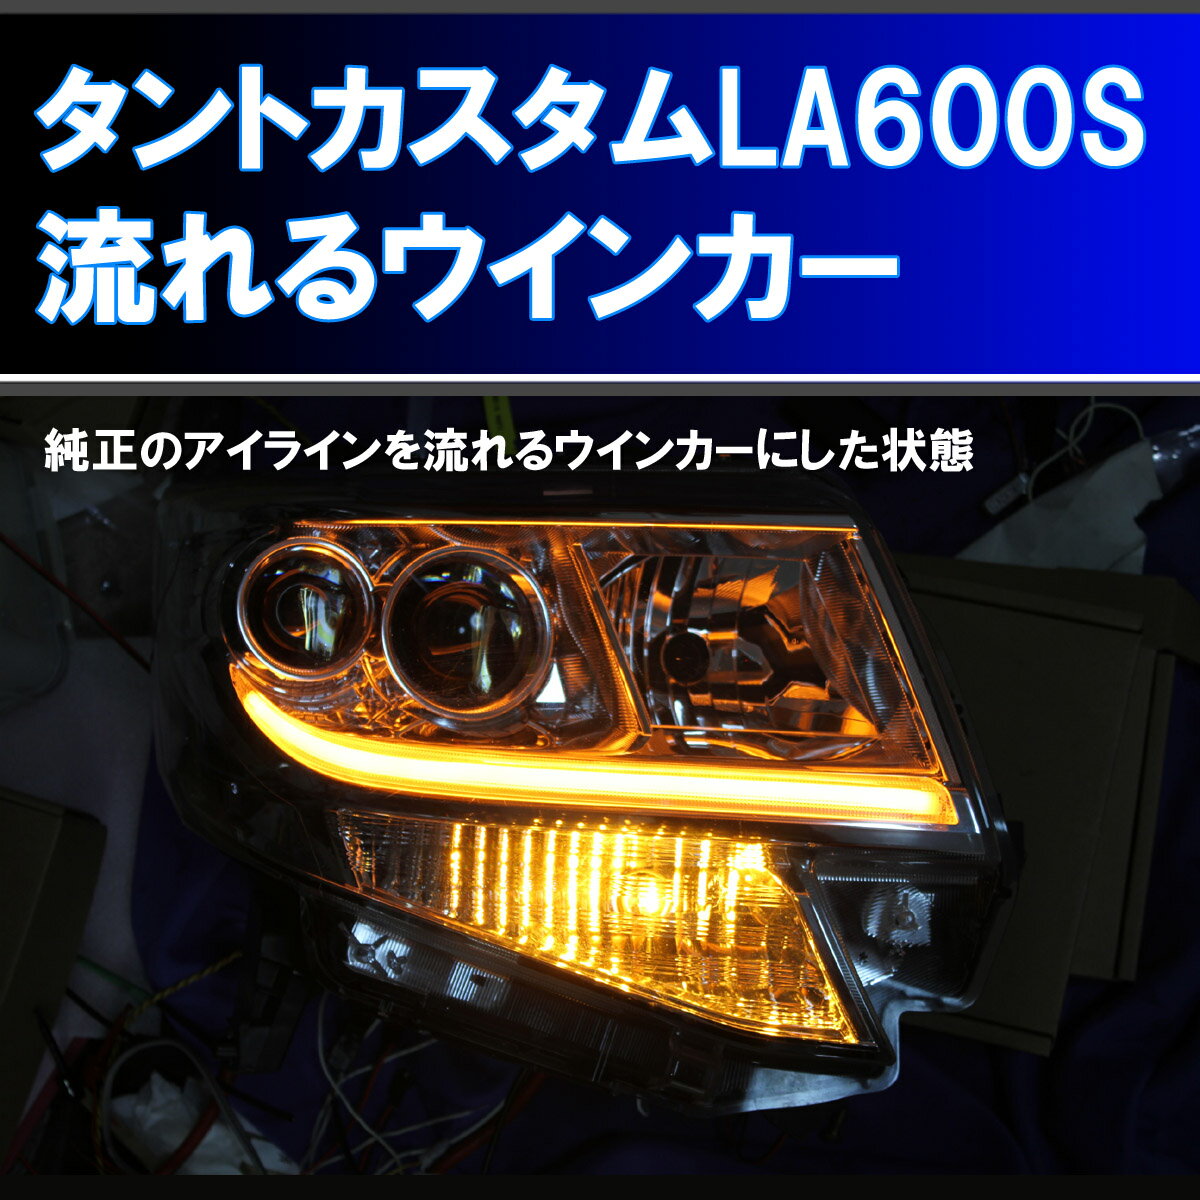 タントカスタム LA600S 用 シーケンシャルウインカー (タントカスタム LA600S に適合) 純正アイラインを5倍以上明るくし、しかも 流れるウインカー にするための取り付けキット。 LA610S デイライト